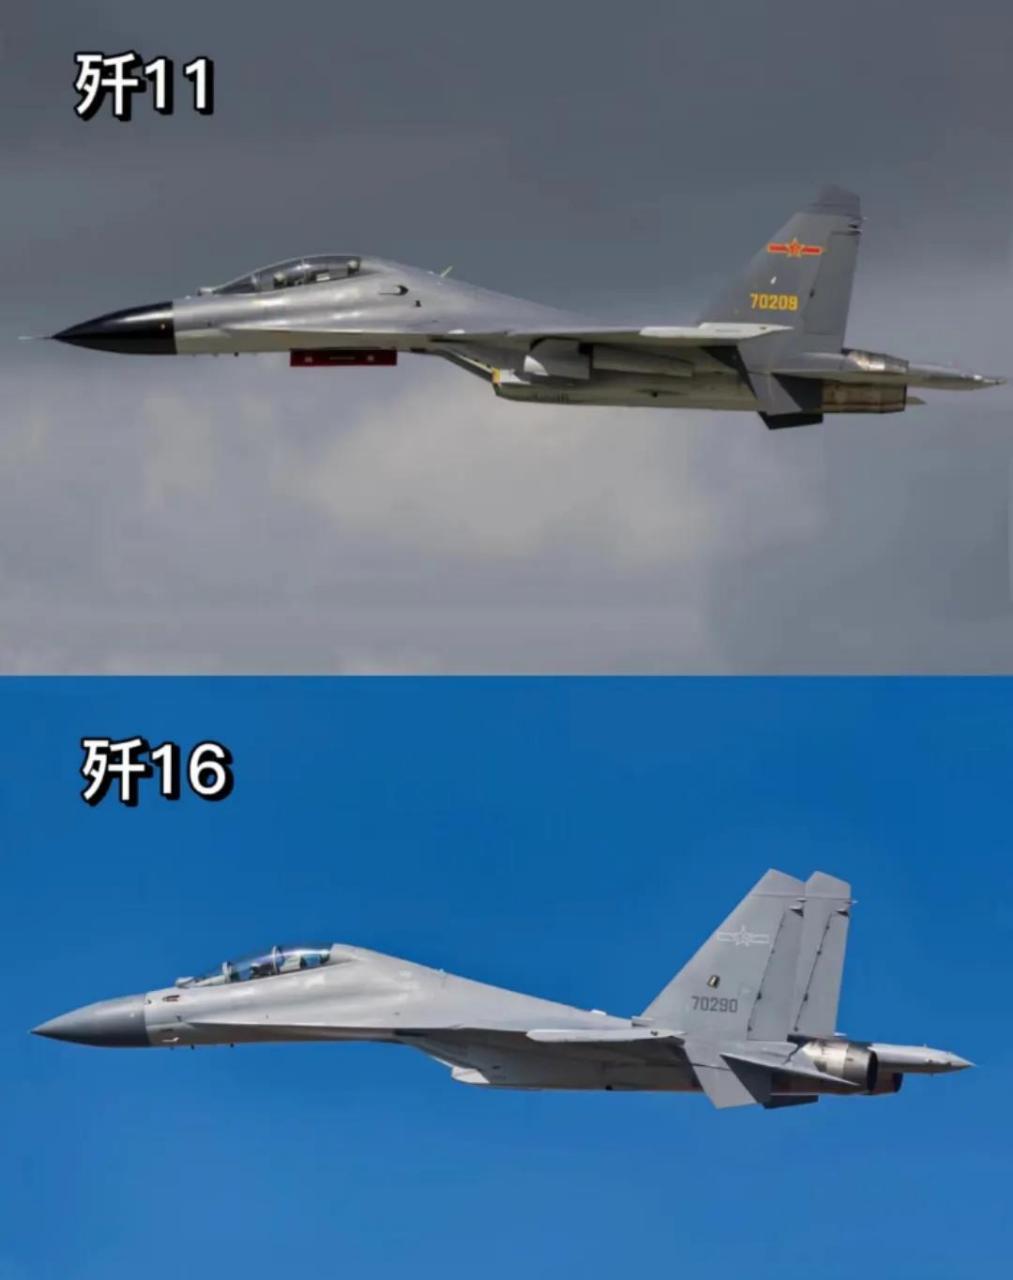 歼11和歼20定位一样是一款空优战斗机,,强调的是空中机动性和空战能力